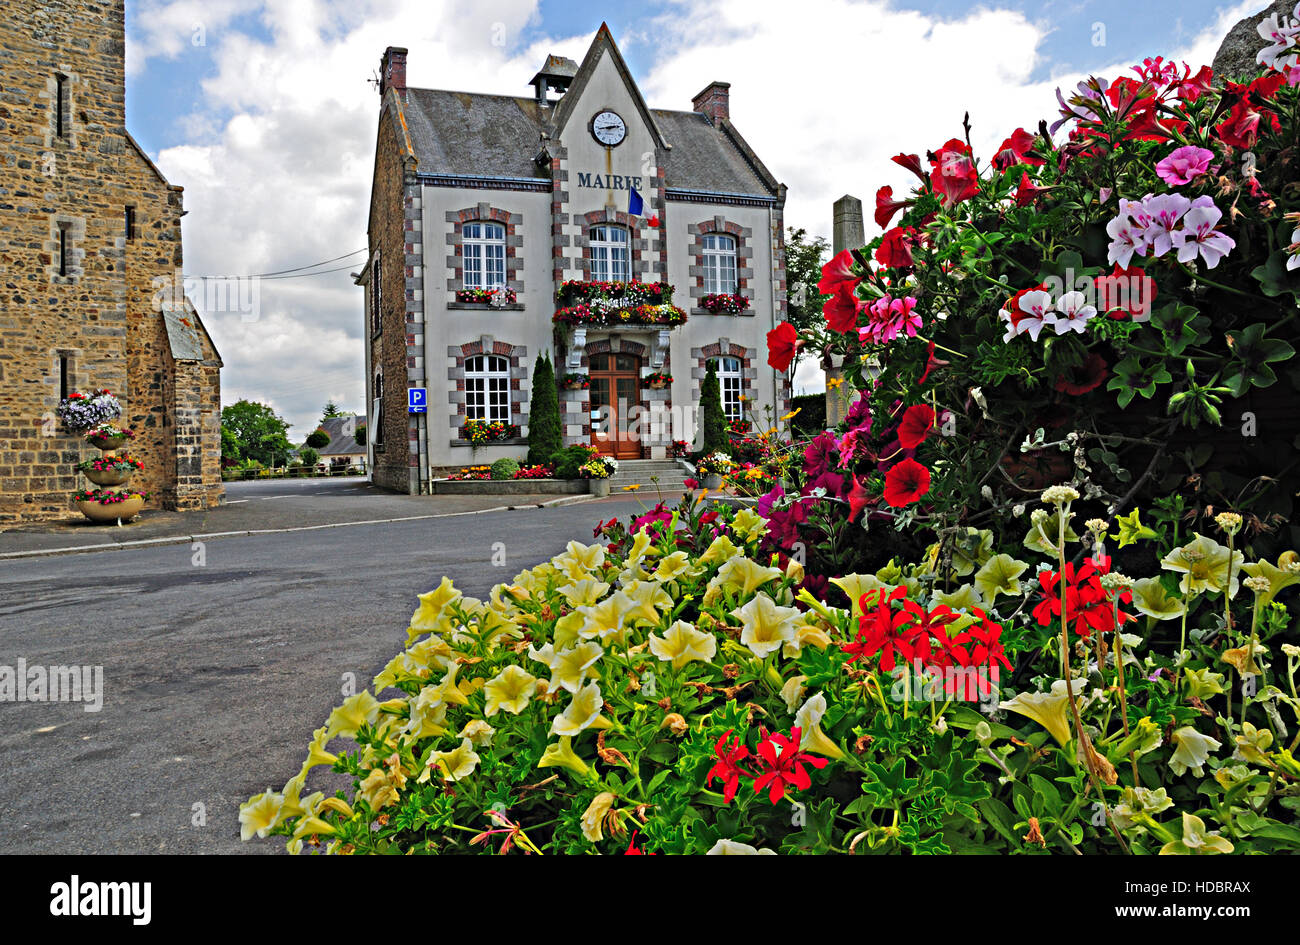 Blumengeschmückten Mairie (Bürgermeisteramt) in einem alten französischen Dorf. Stockfoto